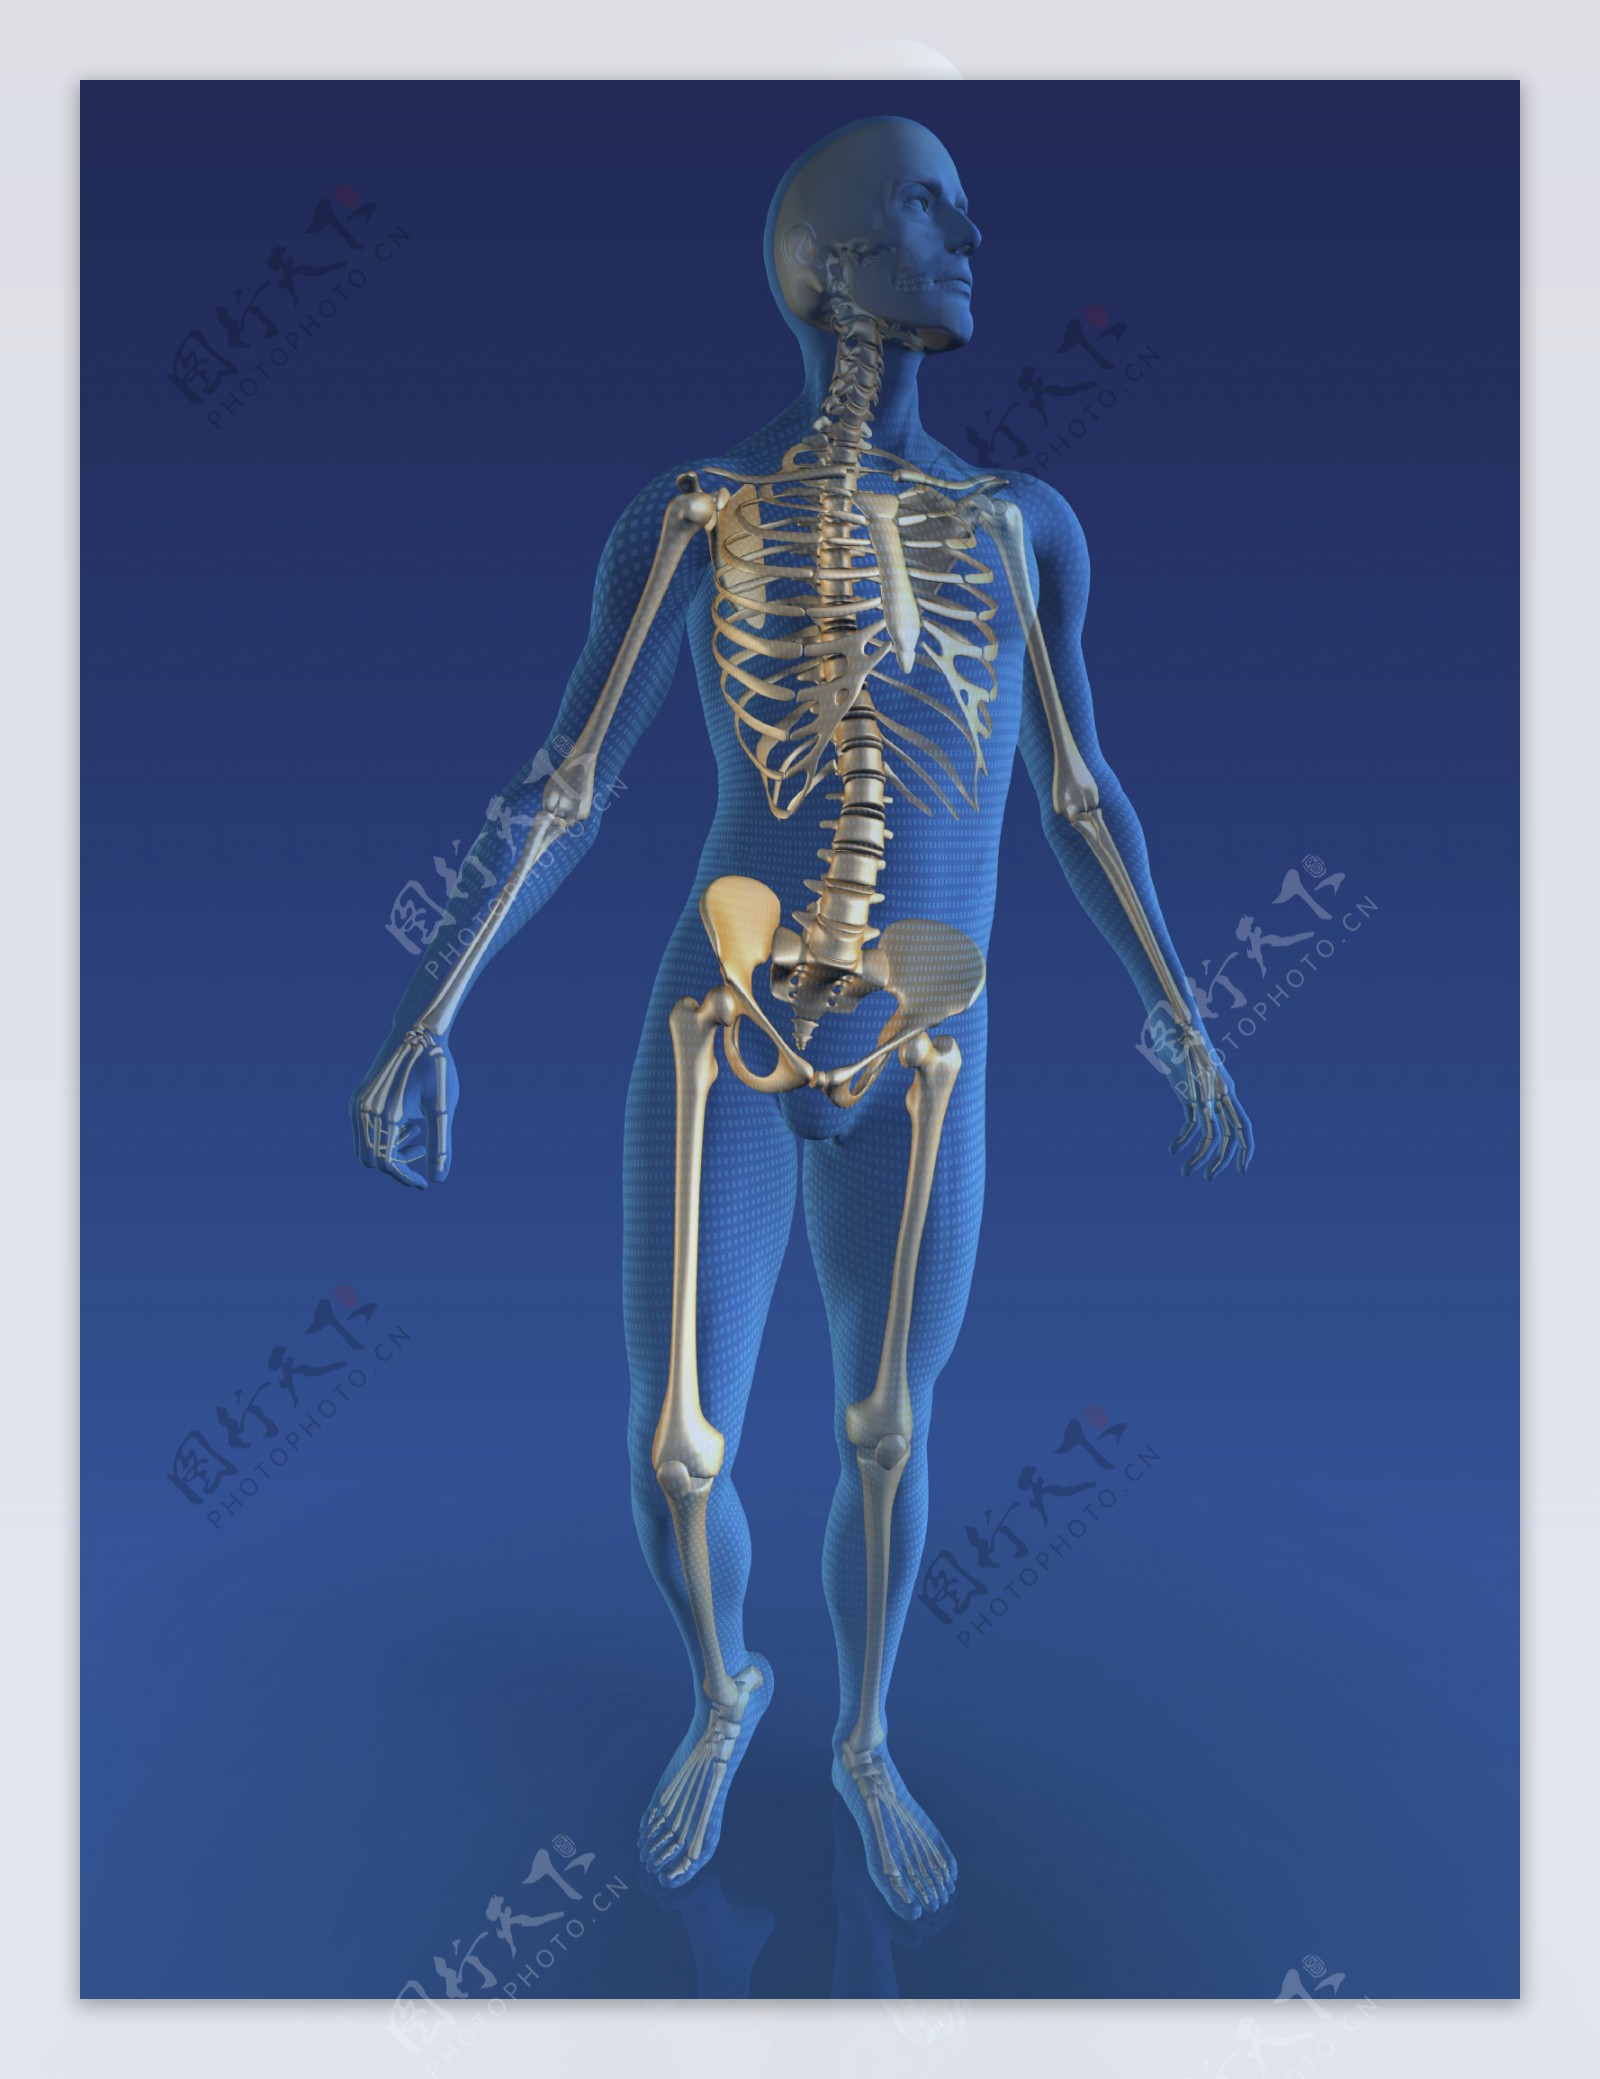 男性人体骨骼图片